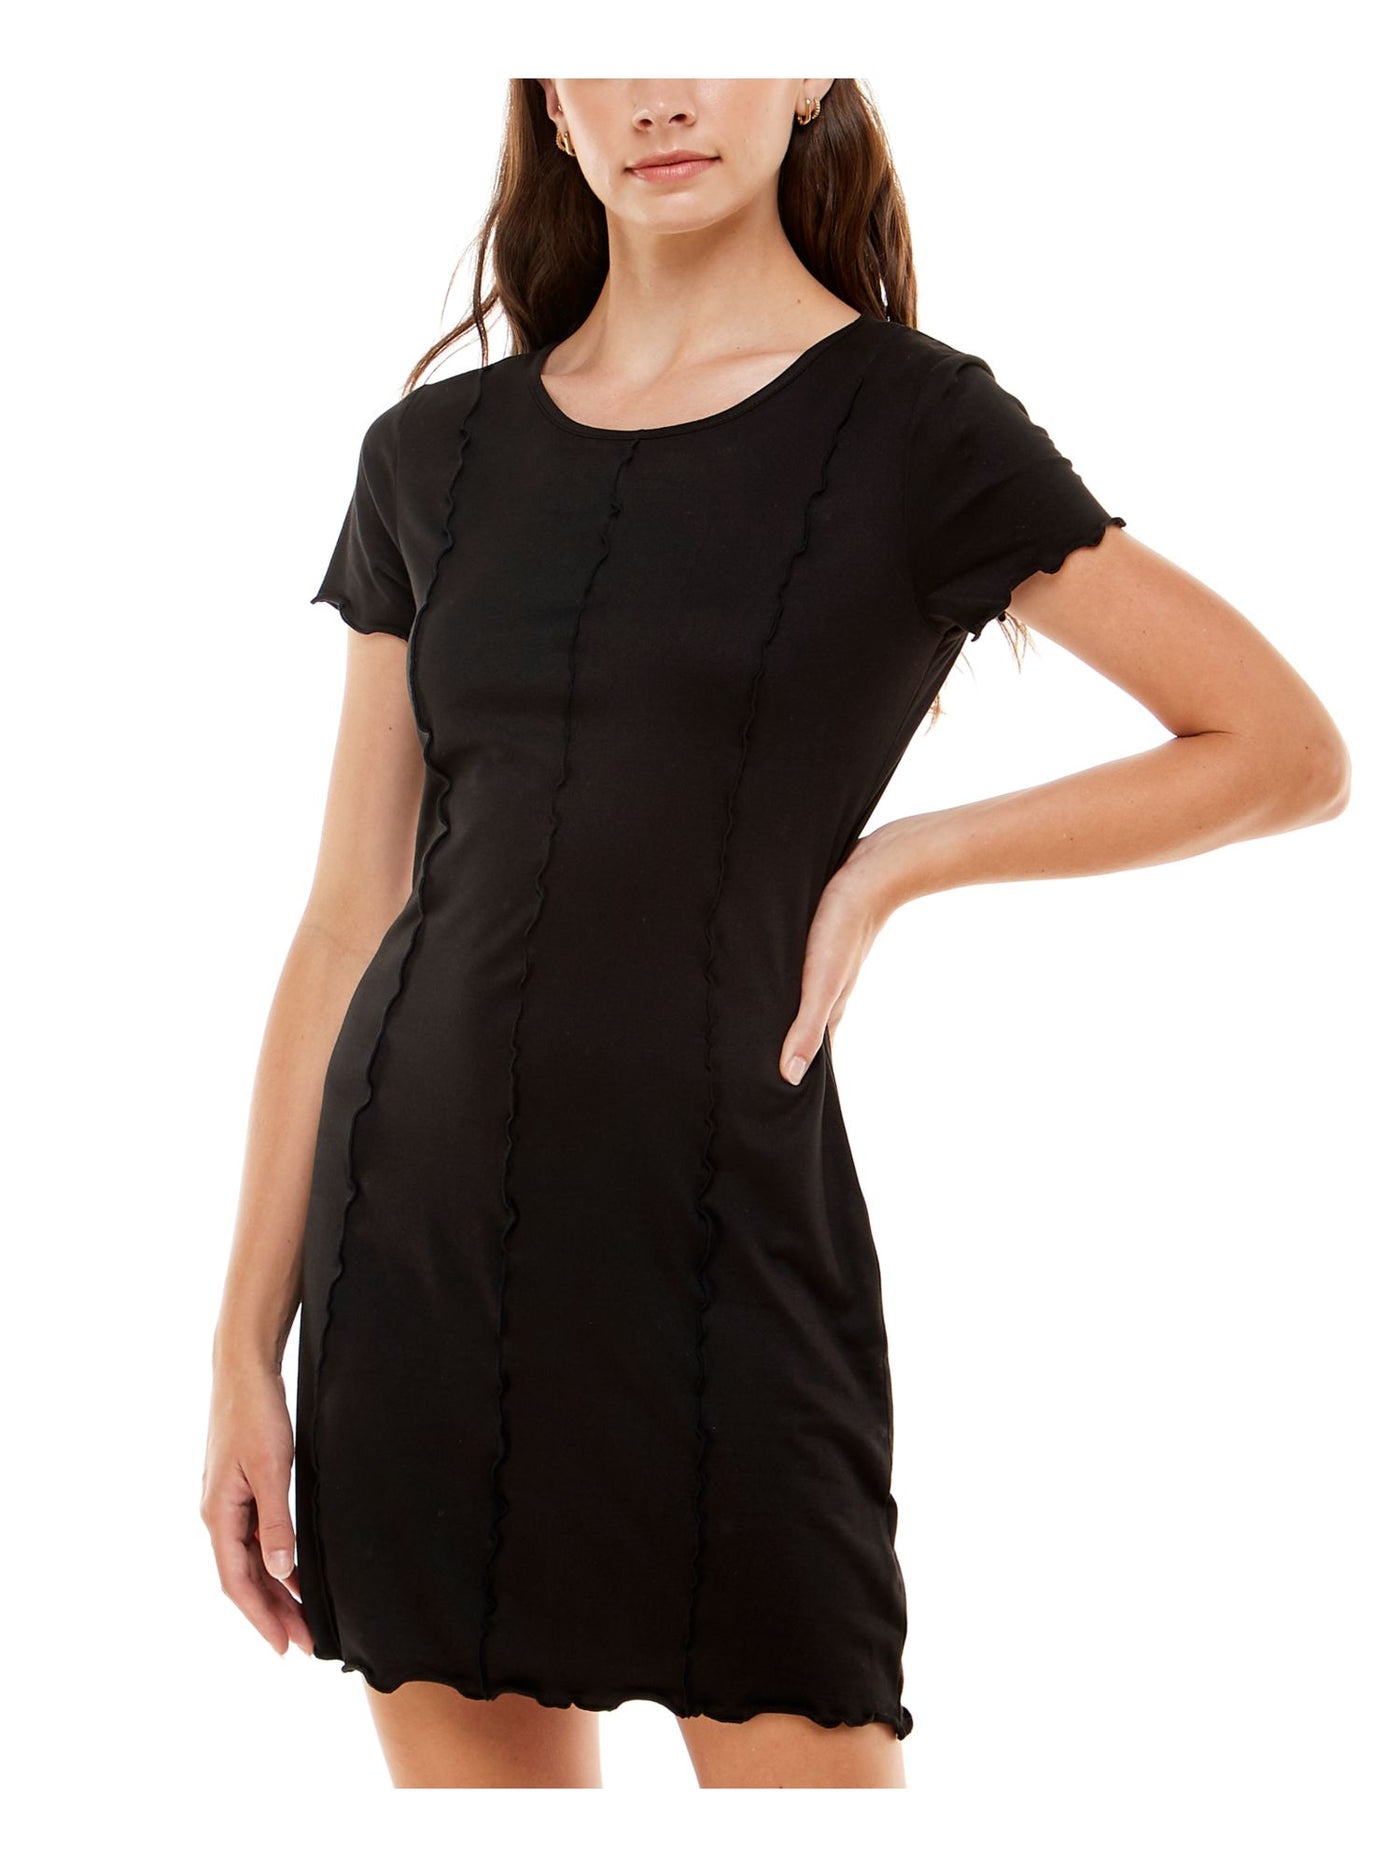 ULTRA FLIRT Womens Black Stretch Short Sleeve Scoop Neck Short Shift Dress Juniors XS